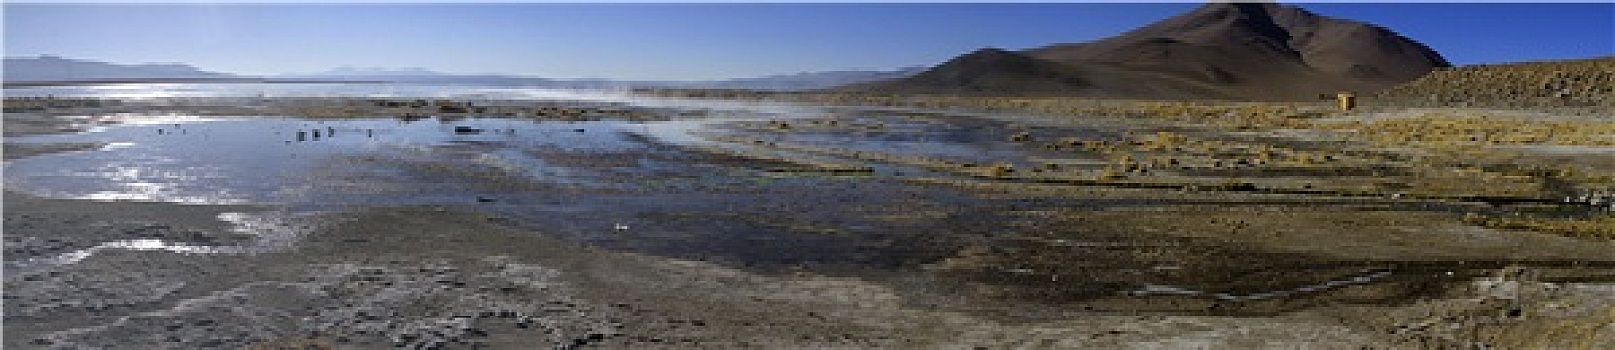 温泉,乌尤尼盐沼,玻利维亚